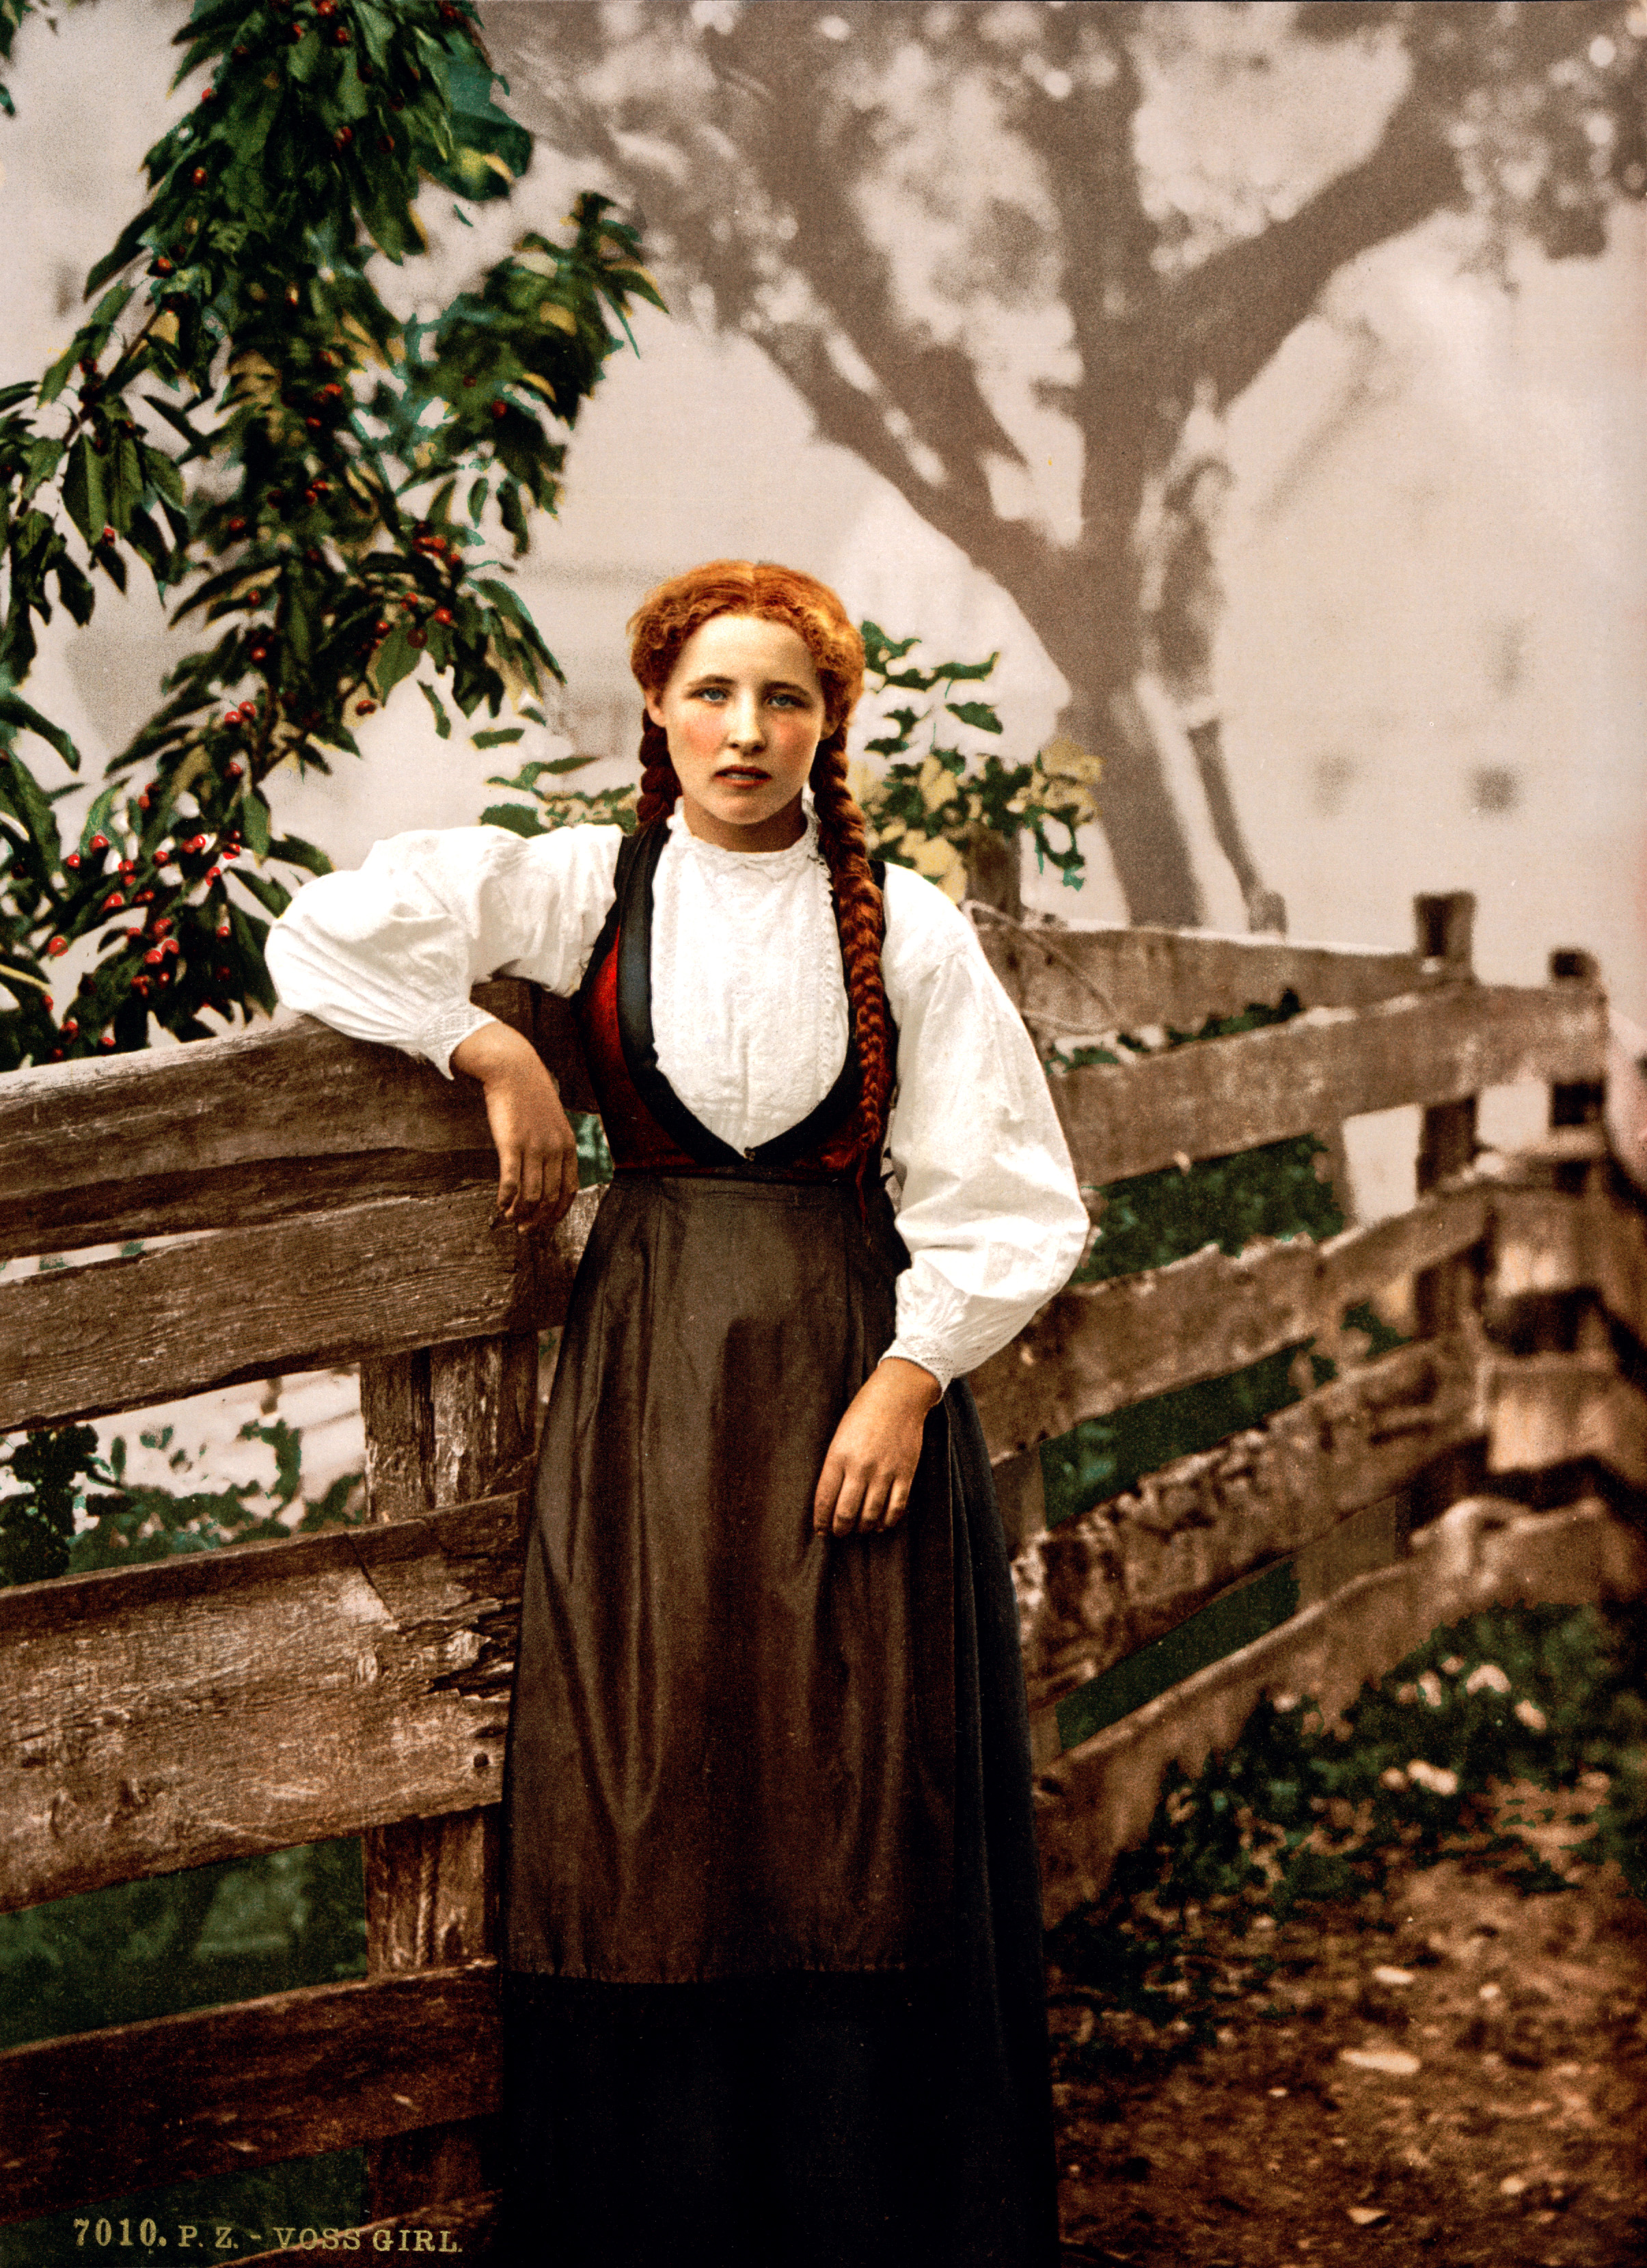 Voss girl, Hardanger Fjord, Norway, ca. 1897